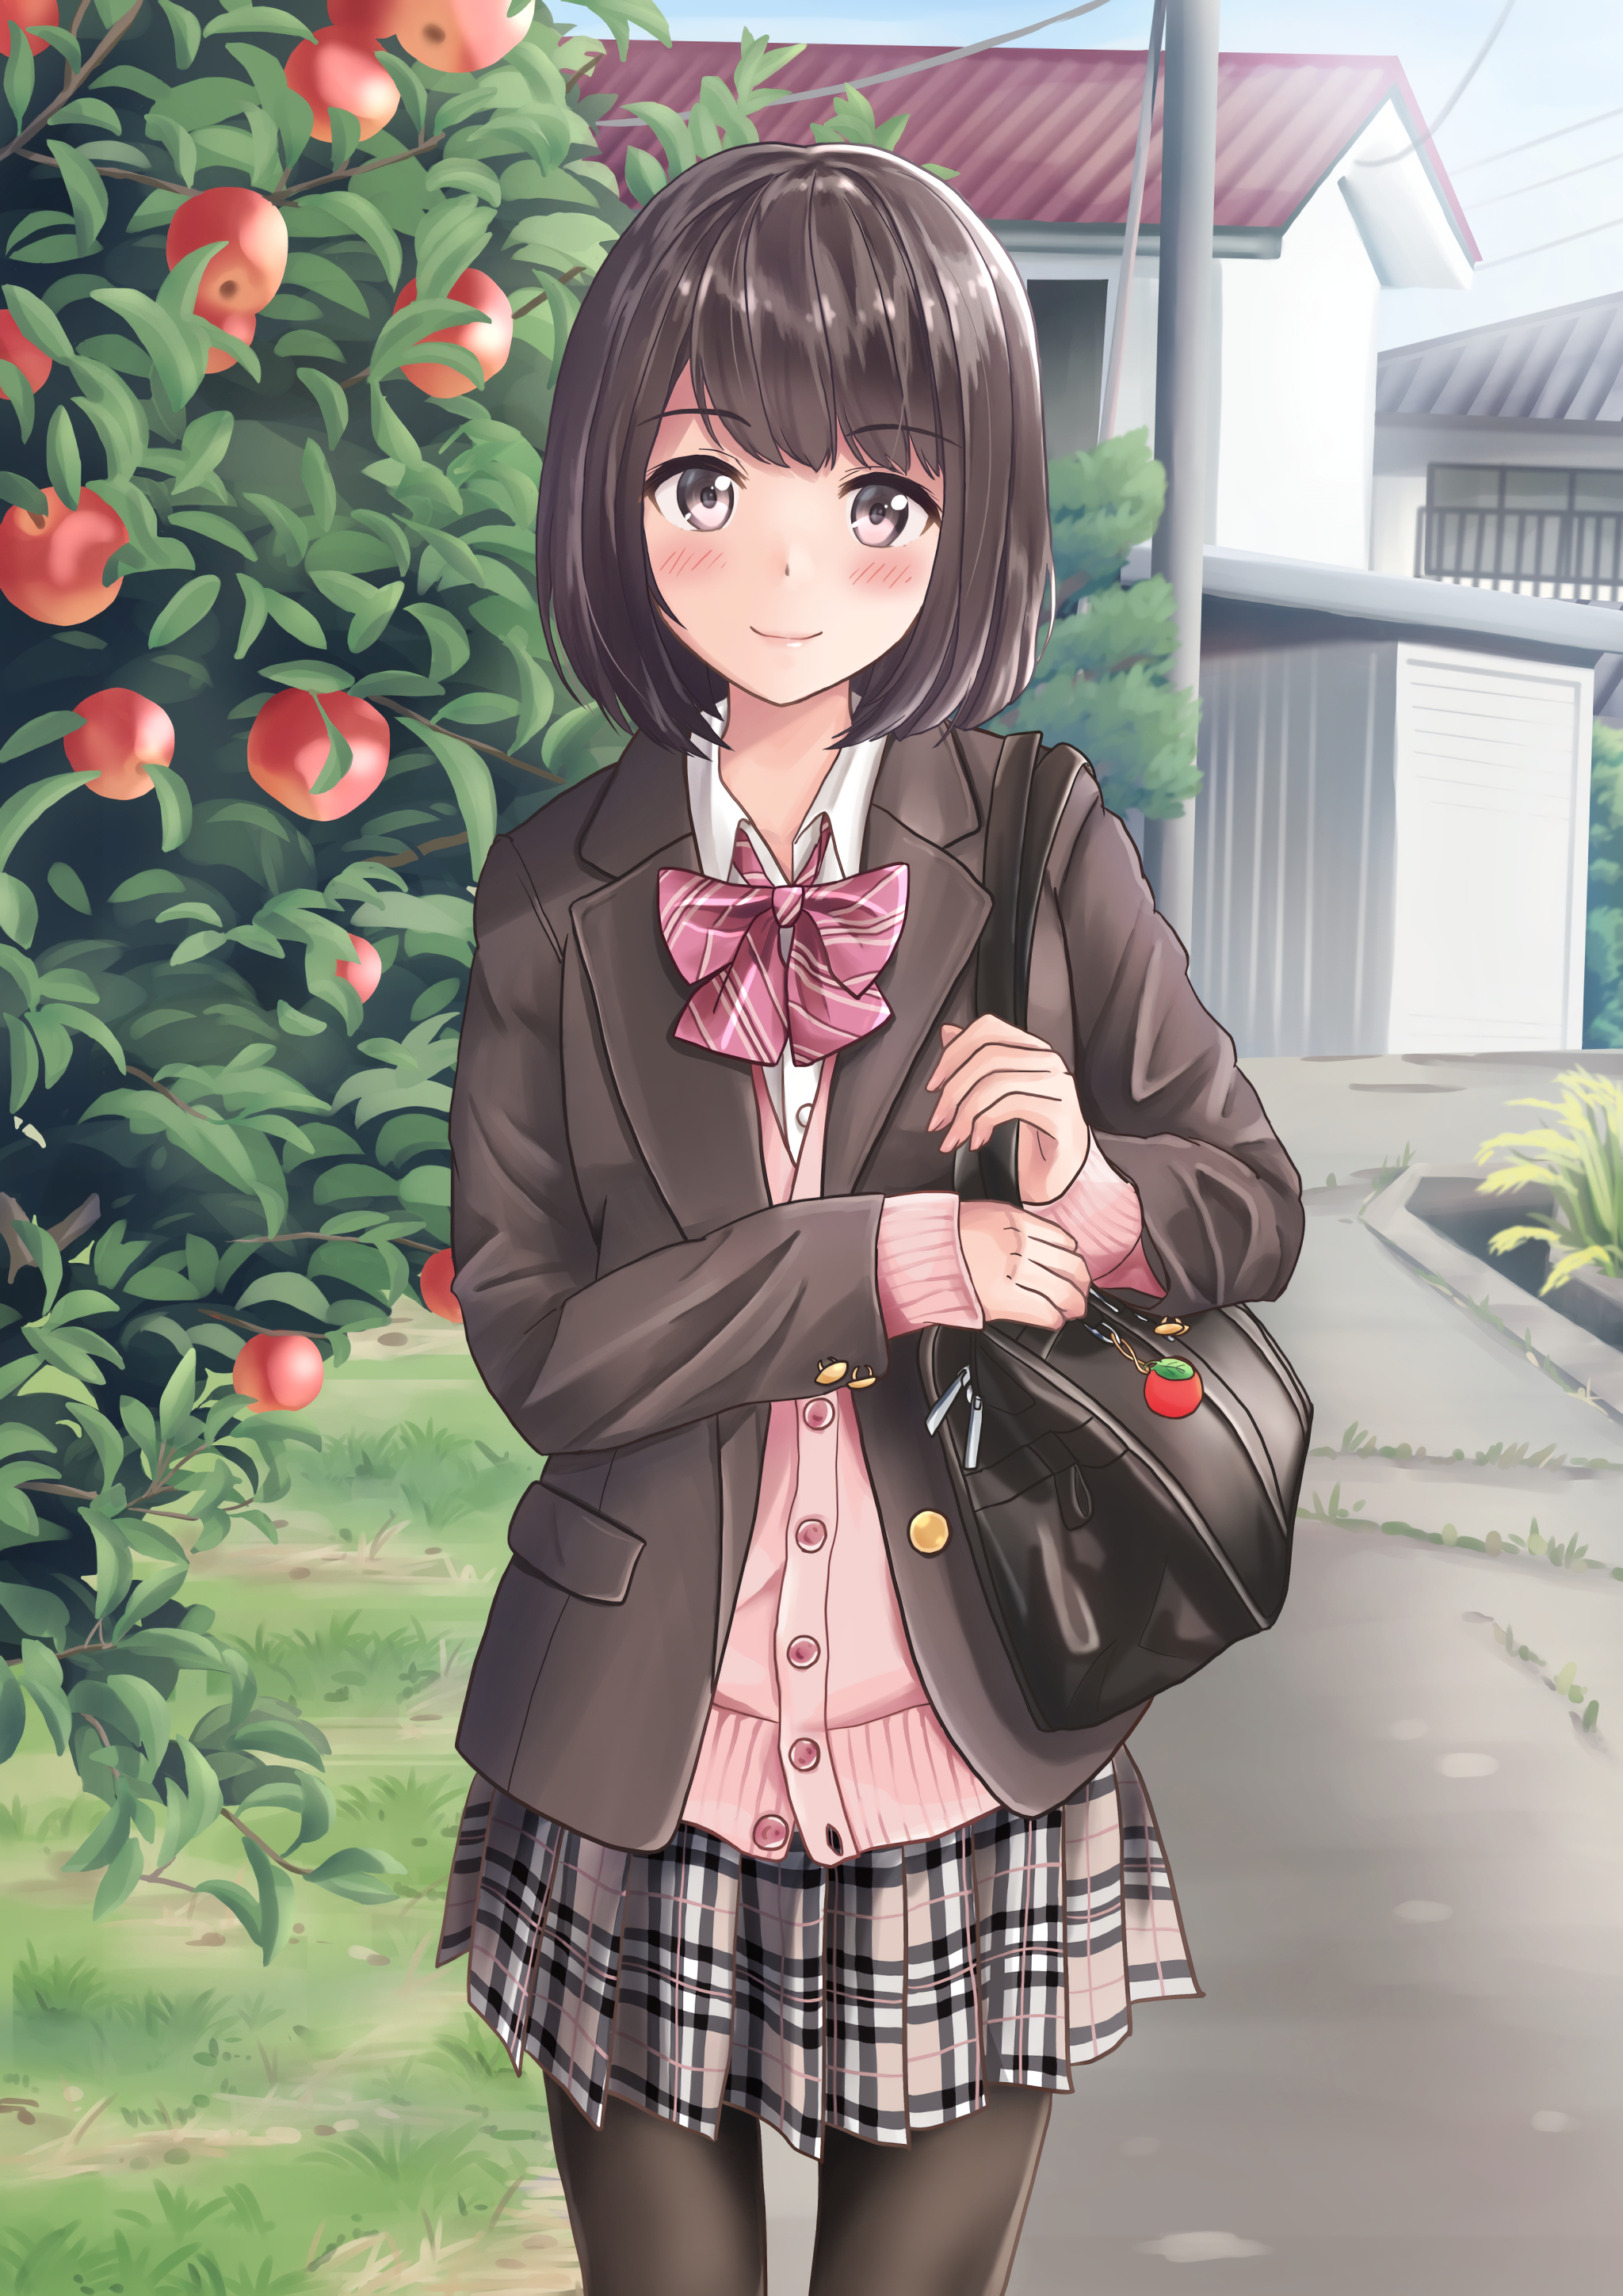 Anime 2048x2898 anime anime girls skirt apples school uniform brown eyes brunette short hair